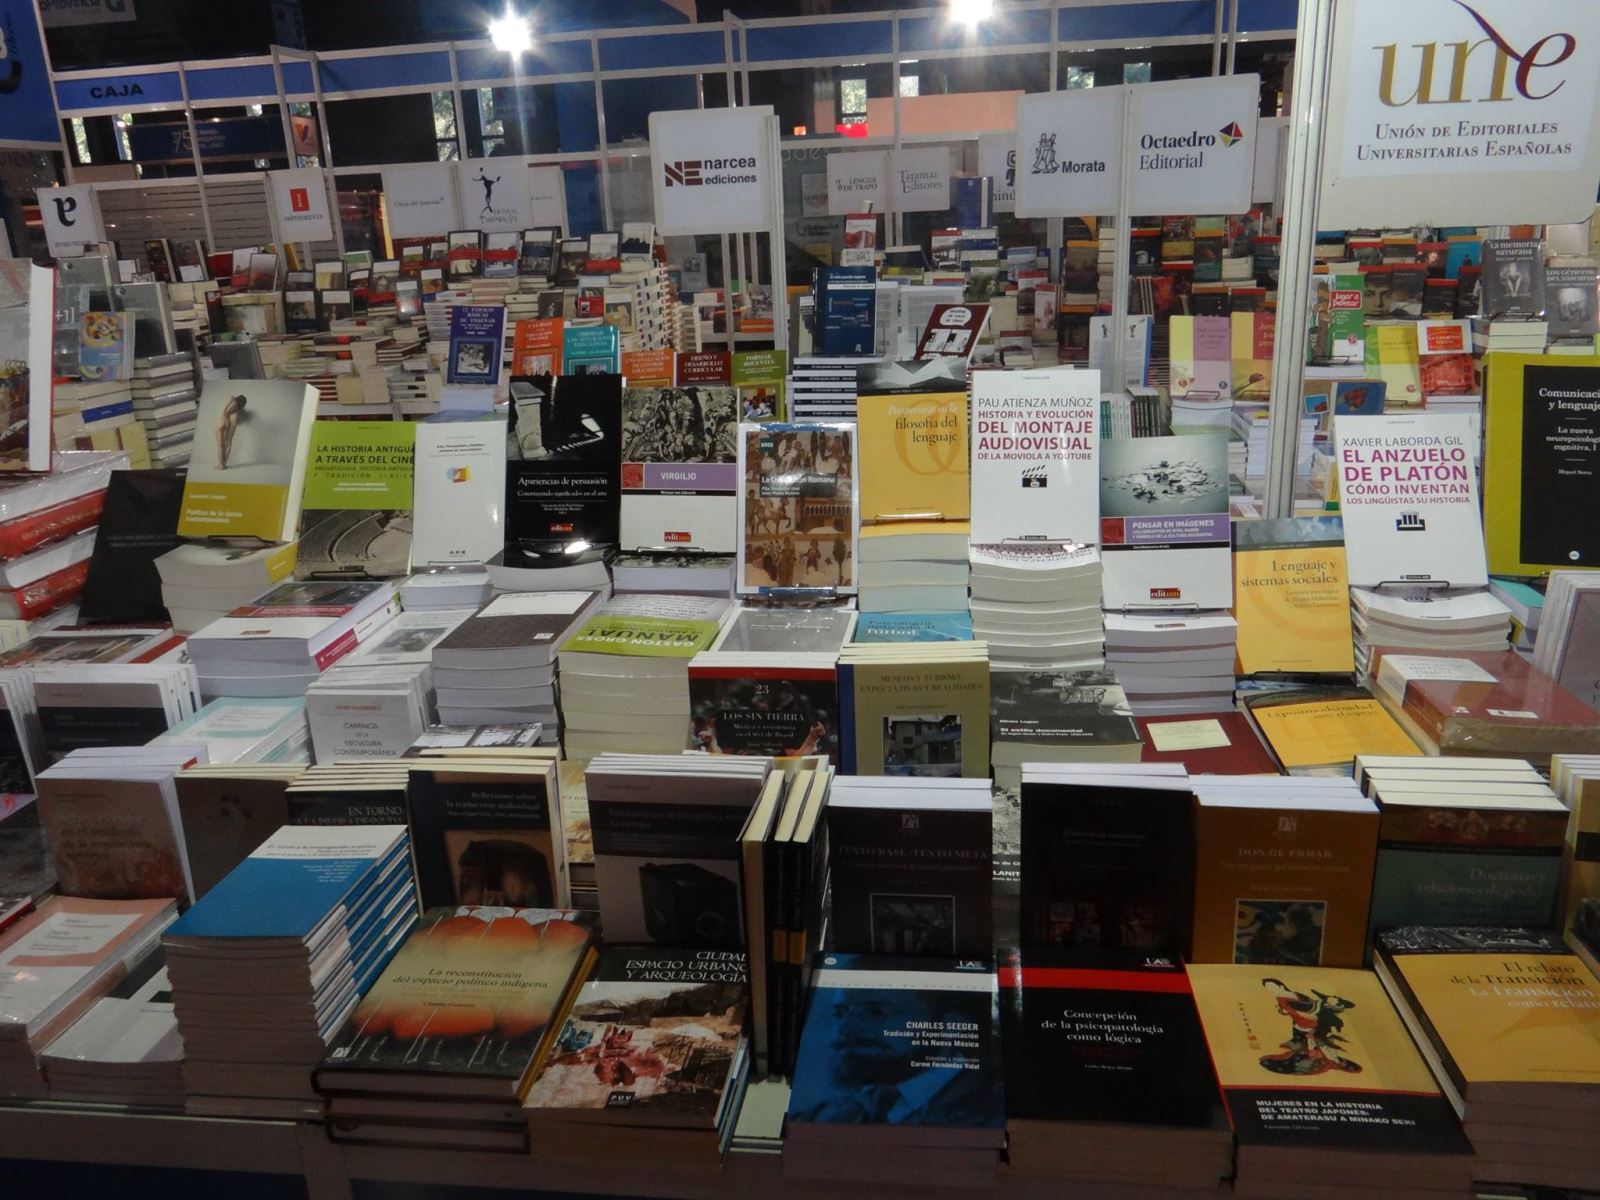 La edición universitaria española participa en la Feria del Libro de Buenos Aires 2015 con 36 sellos y 500 títulos